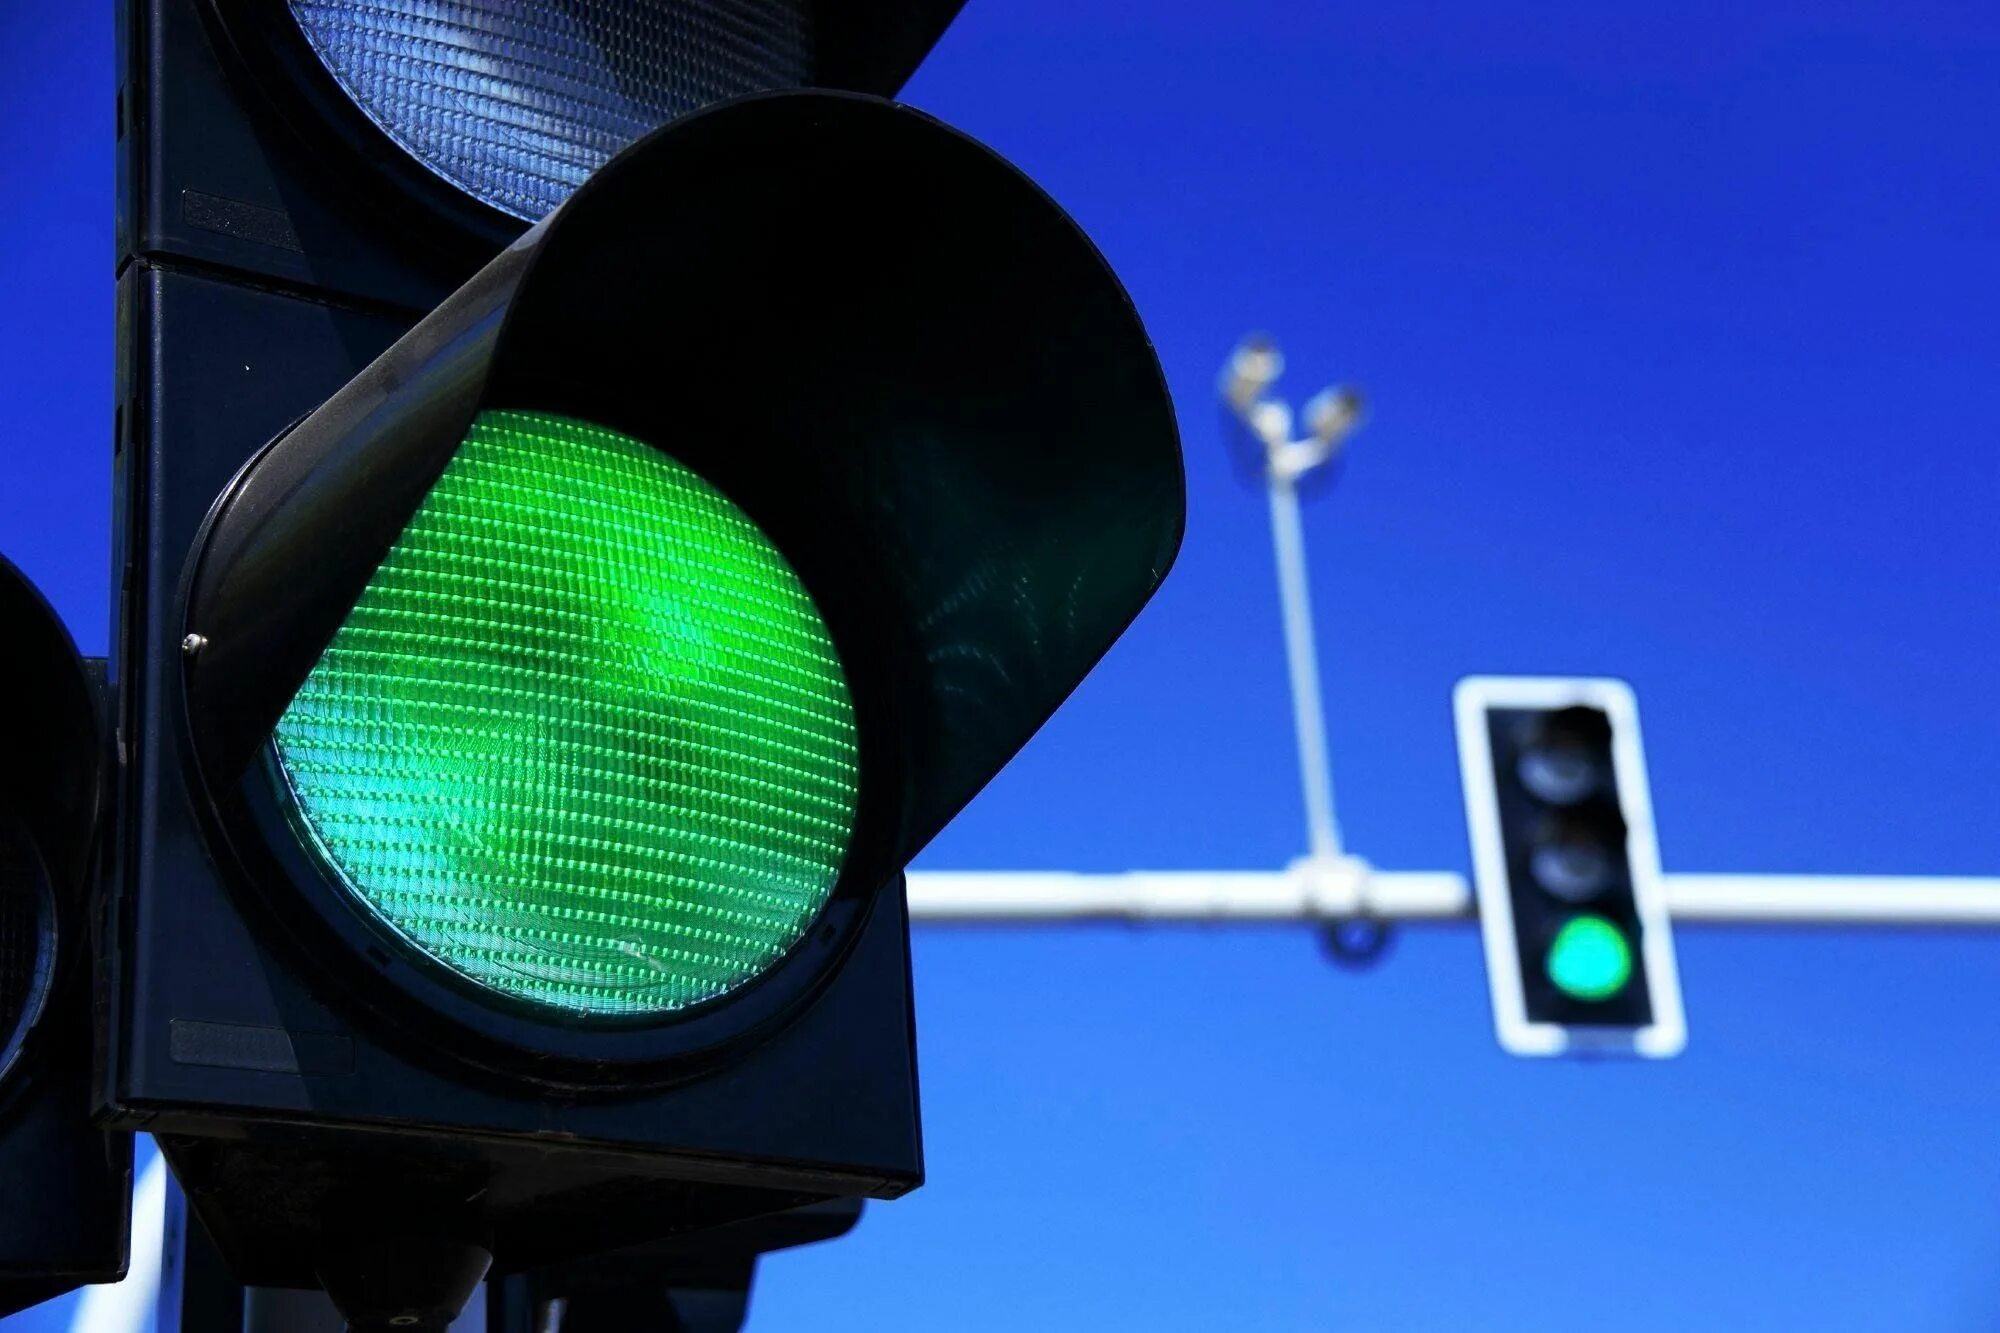 Зеленый свет жизни. Зеленый светофор. Зеленый сигнал светофора. Зеленый свет светофора. Зеленый цвет светофора.